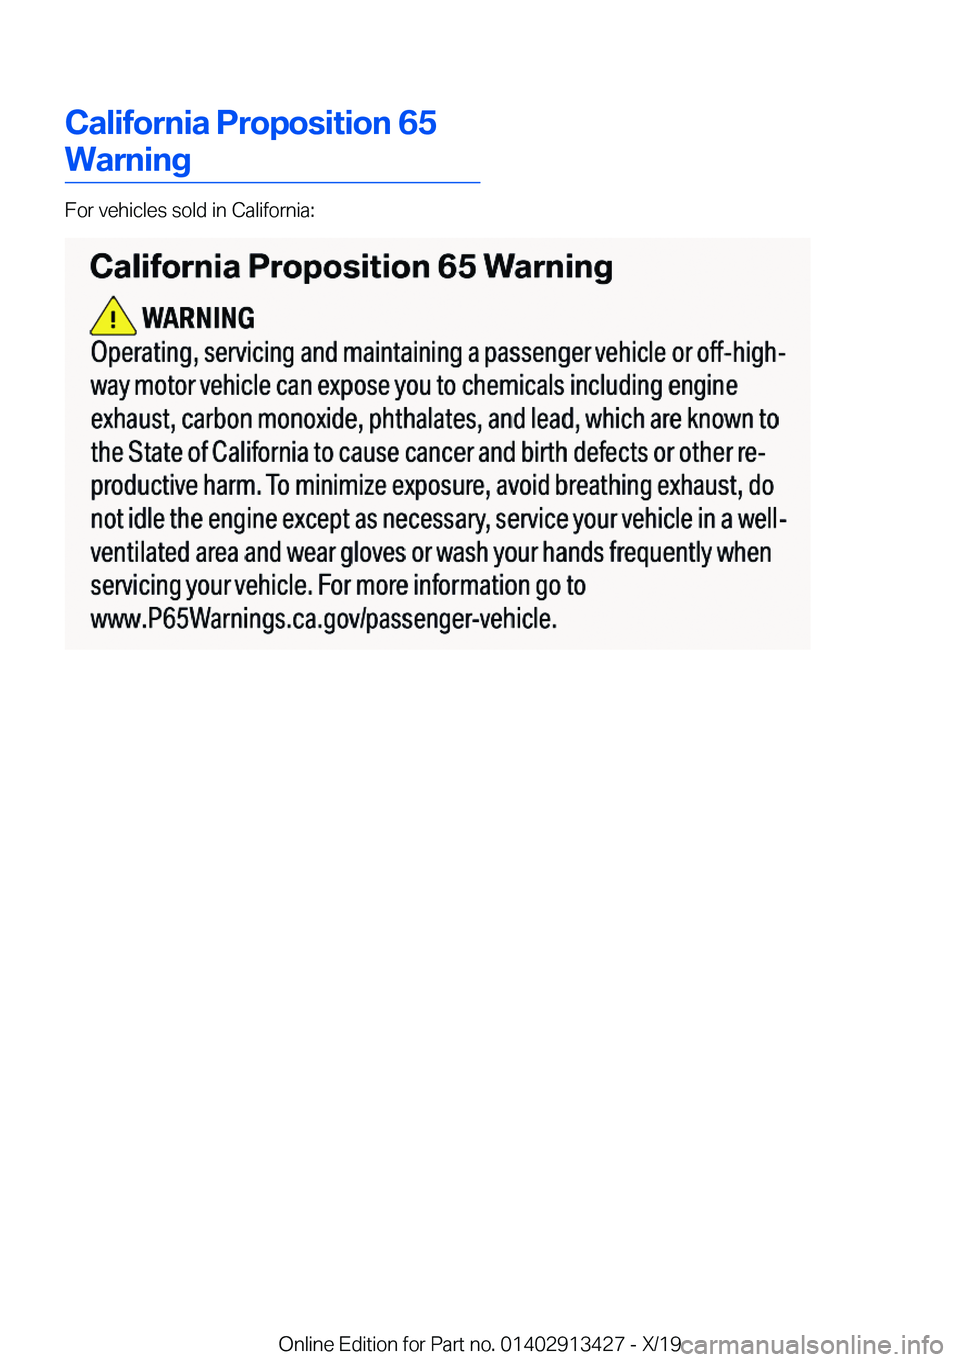 BMW 3 SERIES 2020  Owners Manual �C�a�l�i�f�o�r�n�i�a��P�r�o�p�o�s�i�t�i�o�n��6�5
�W�a�r�n�i�n�g
�F�o�r��v�e�h�i�c�l�e�s��s�o�l�d��i�n��C�a�l�i�f�o�r�n�i�a�:
�O�n�l�i�n�e��E�d�i�t�i�o�n��f�o�r��P�a�r�t��n�o�.��0�1�4�0�2�9�